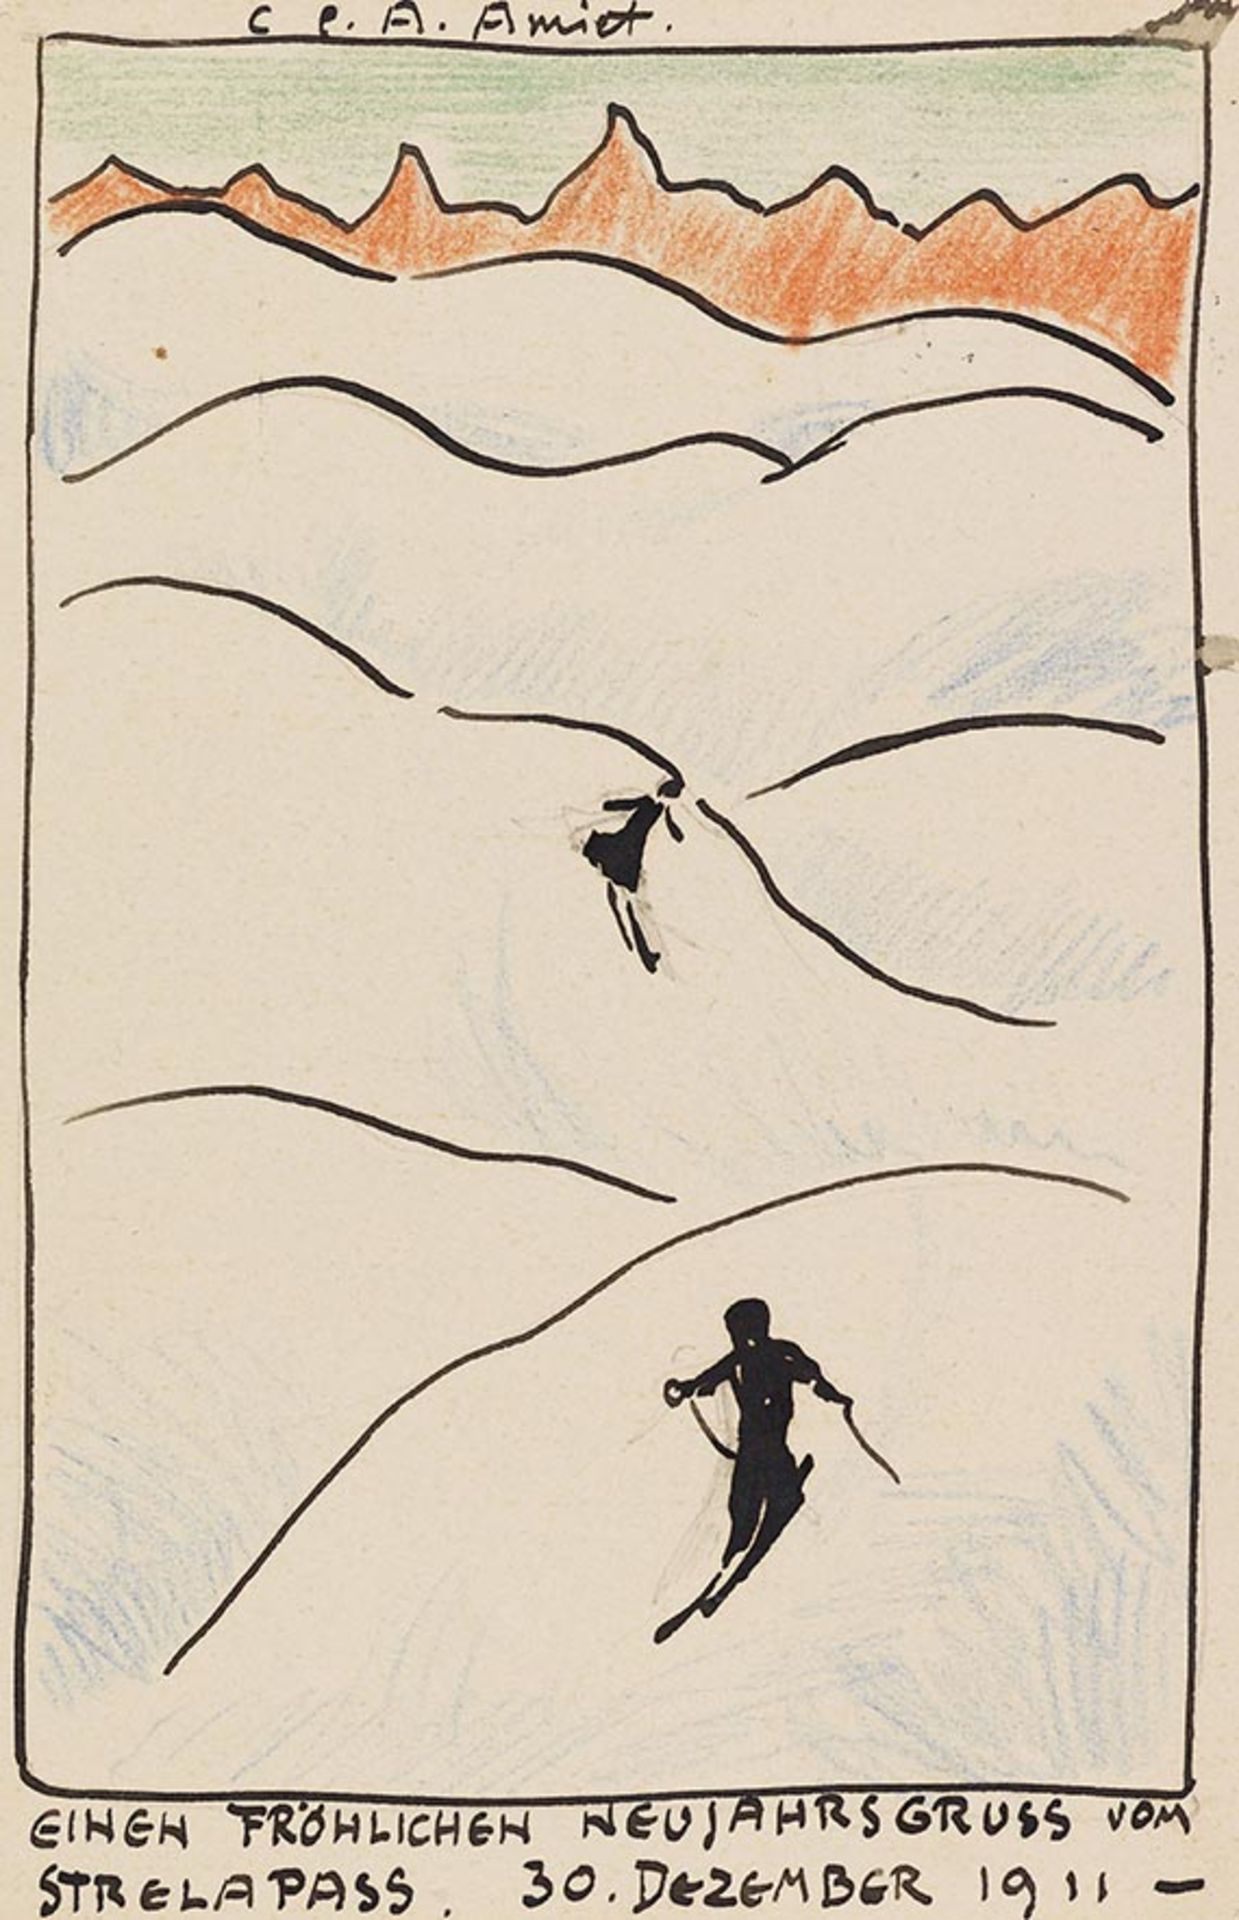 Cuno Amiet 1868 Solothurn - 1961 Oschwand Postkarte: Berglandschaft mit Skifahrer. 1911.